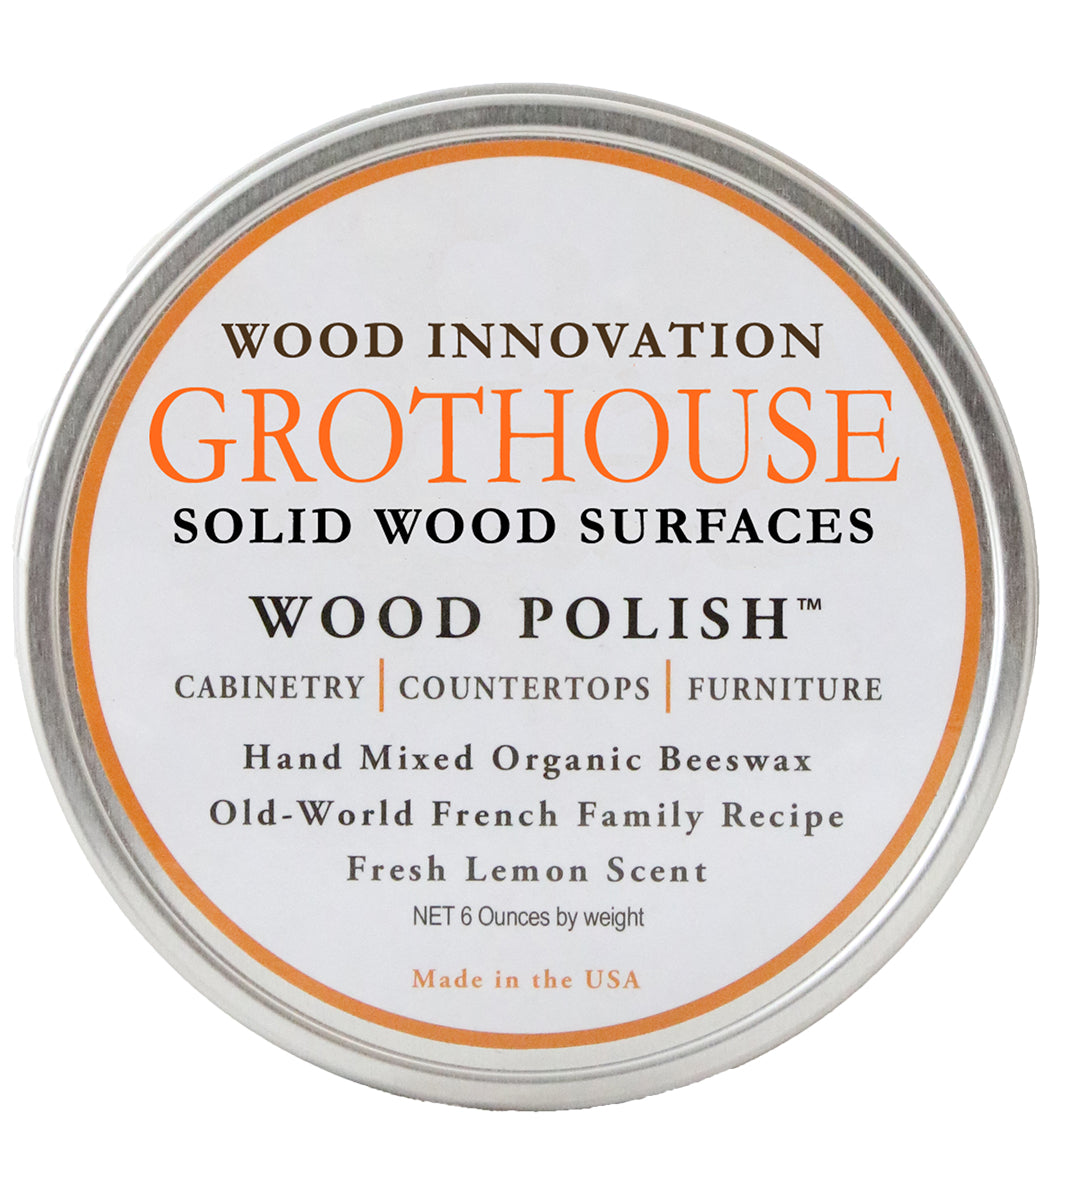 Grothouse Wood Polish™